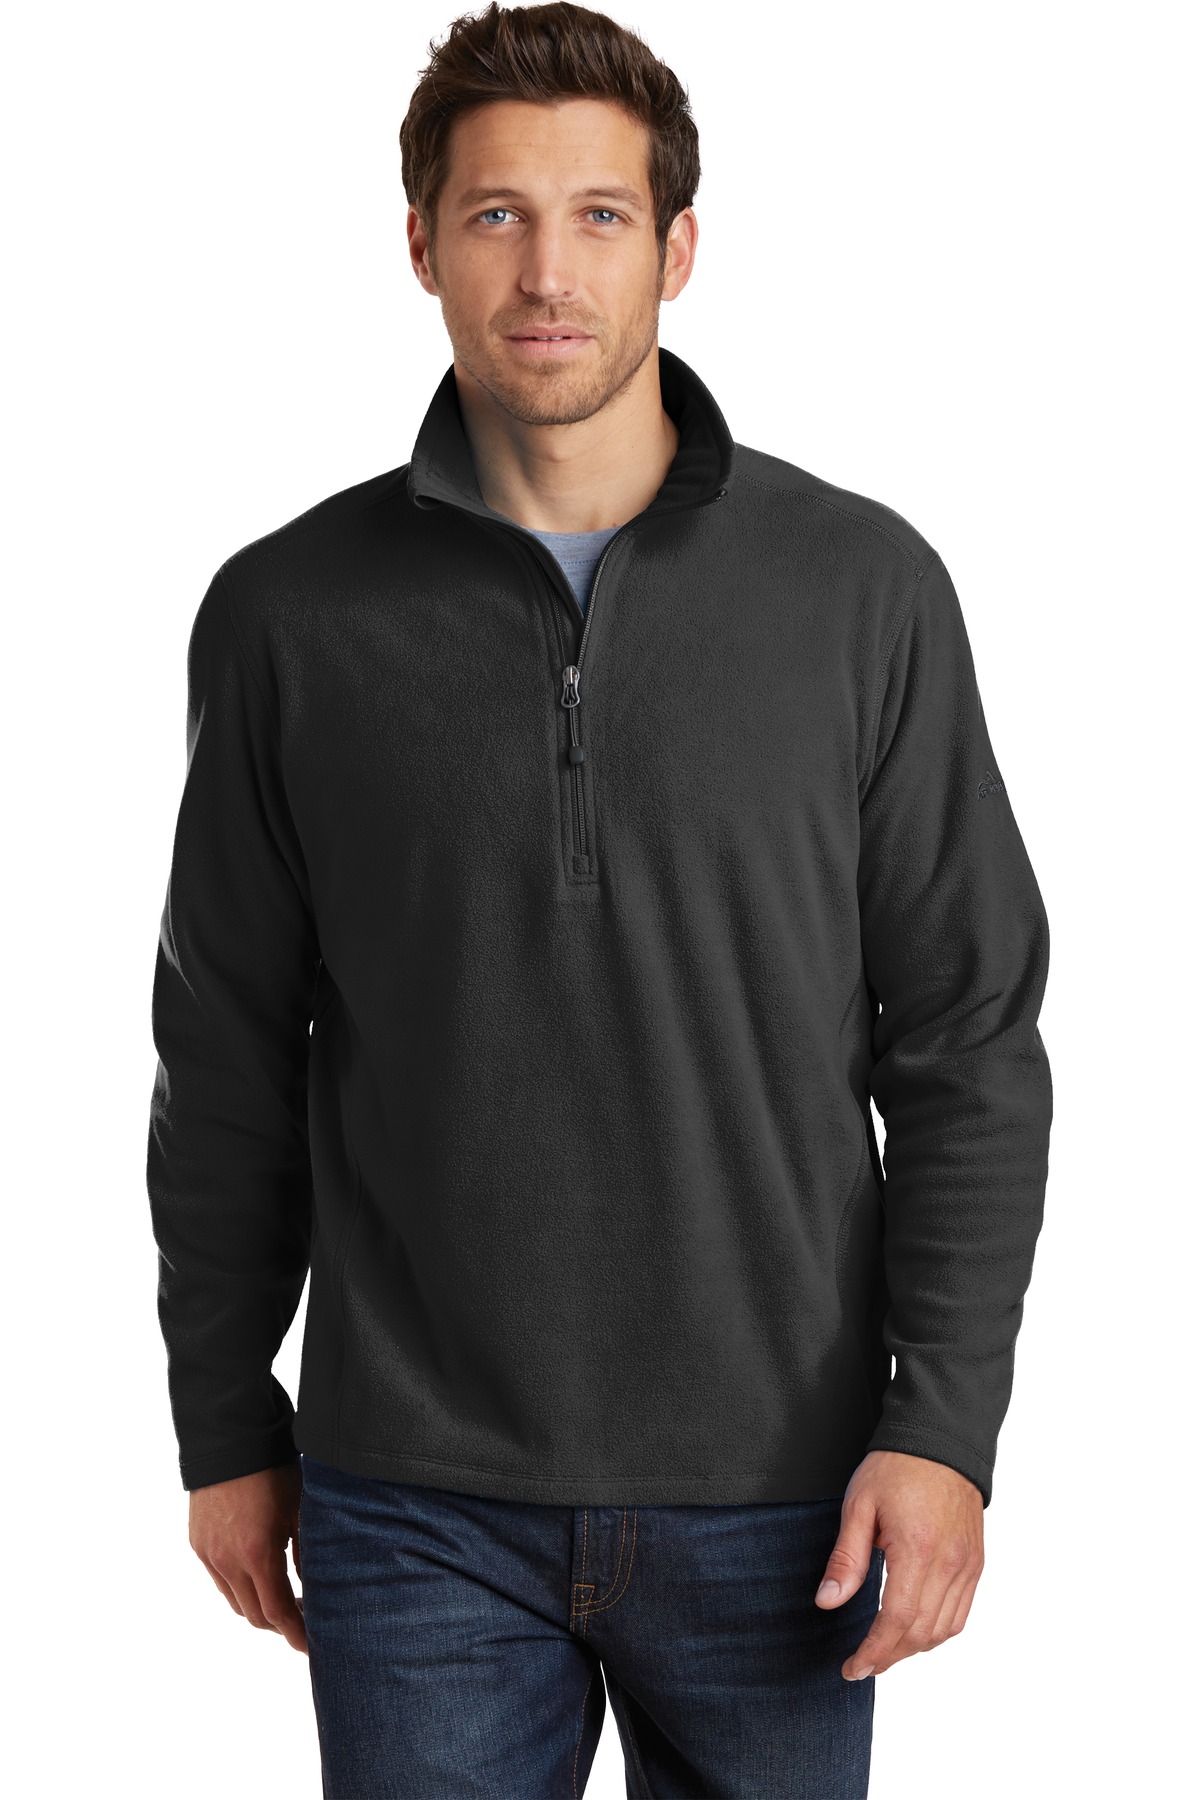 Eddie Bauer Outerwear, Sweat shirts & Fleece for Hospitality ®1/2-Zip Microfleece Jacket.-Eddie Bauer